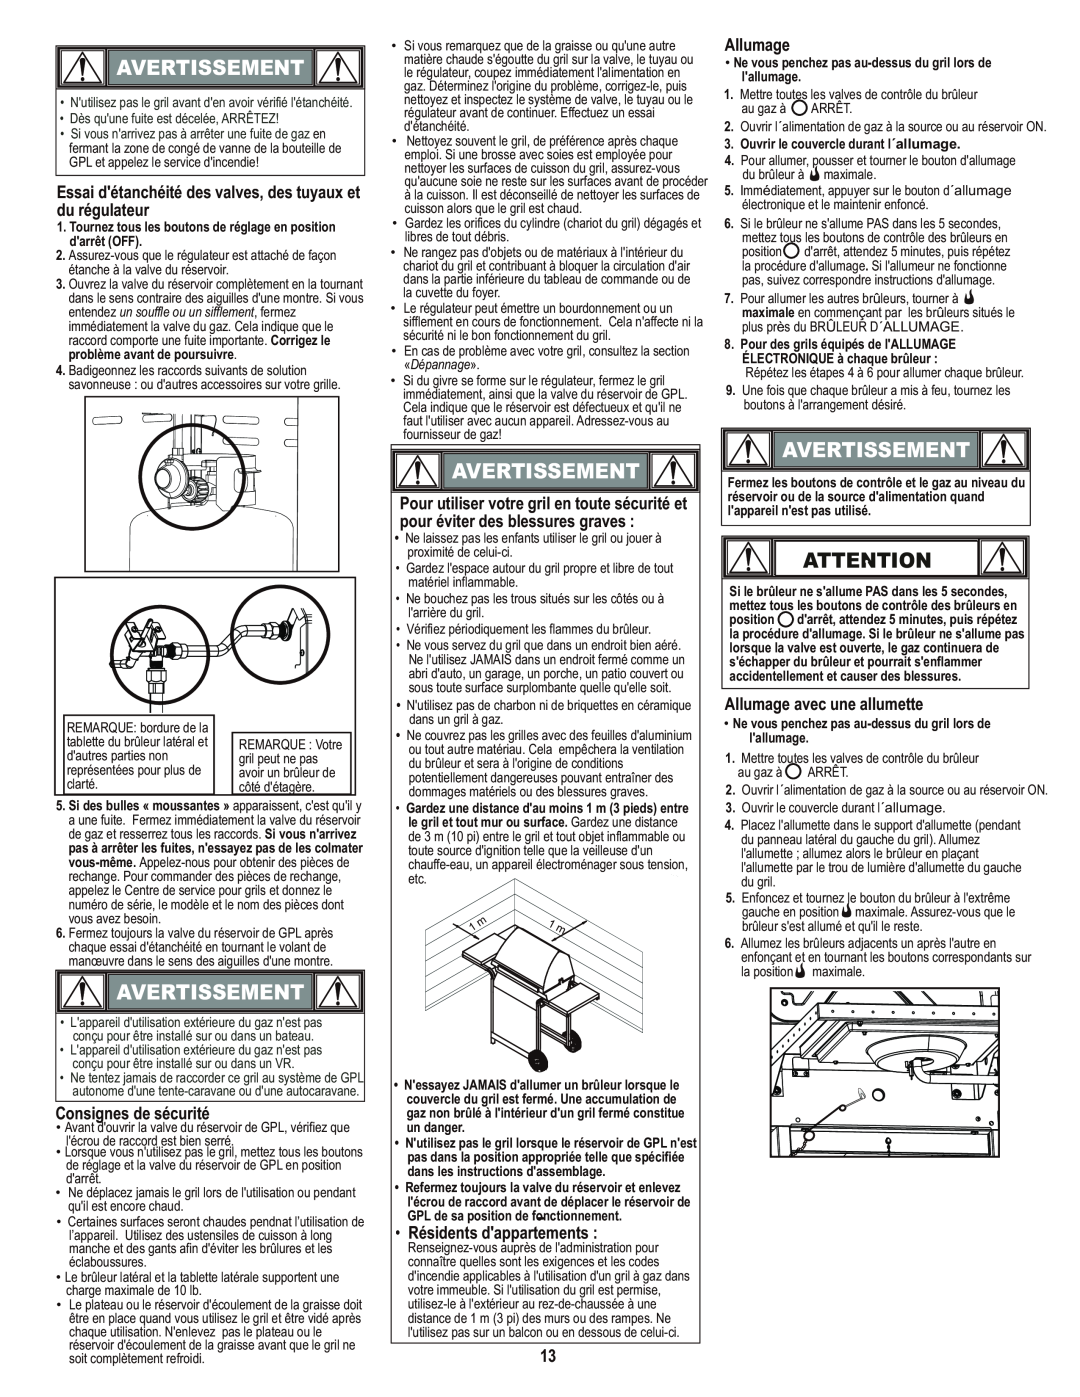 Char-Broil 466650414 manual Avertissement, Essai détanchéité des valves, des tuyaux et du régulateur, Consignes de sécurité 